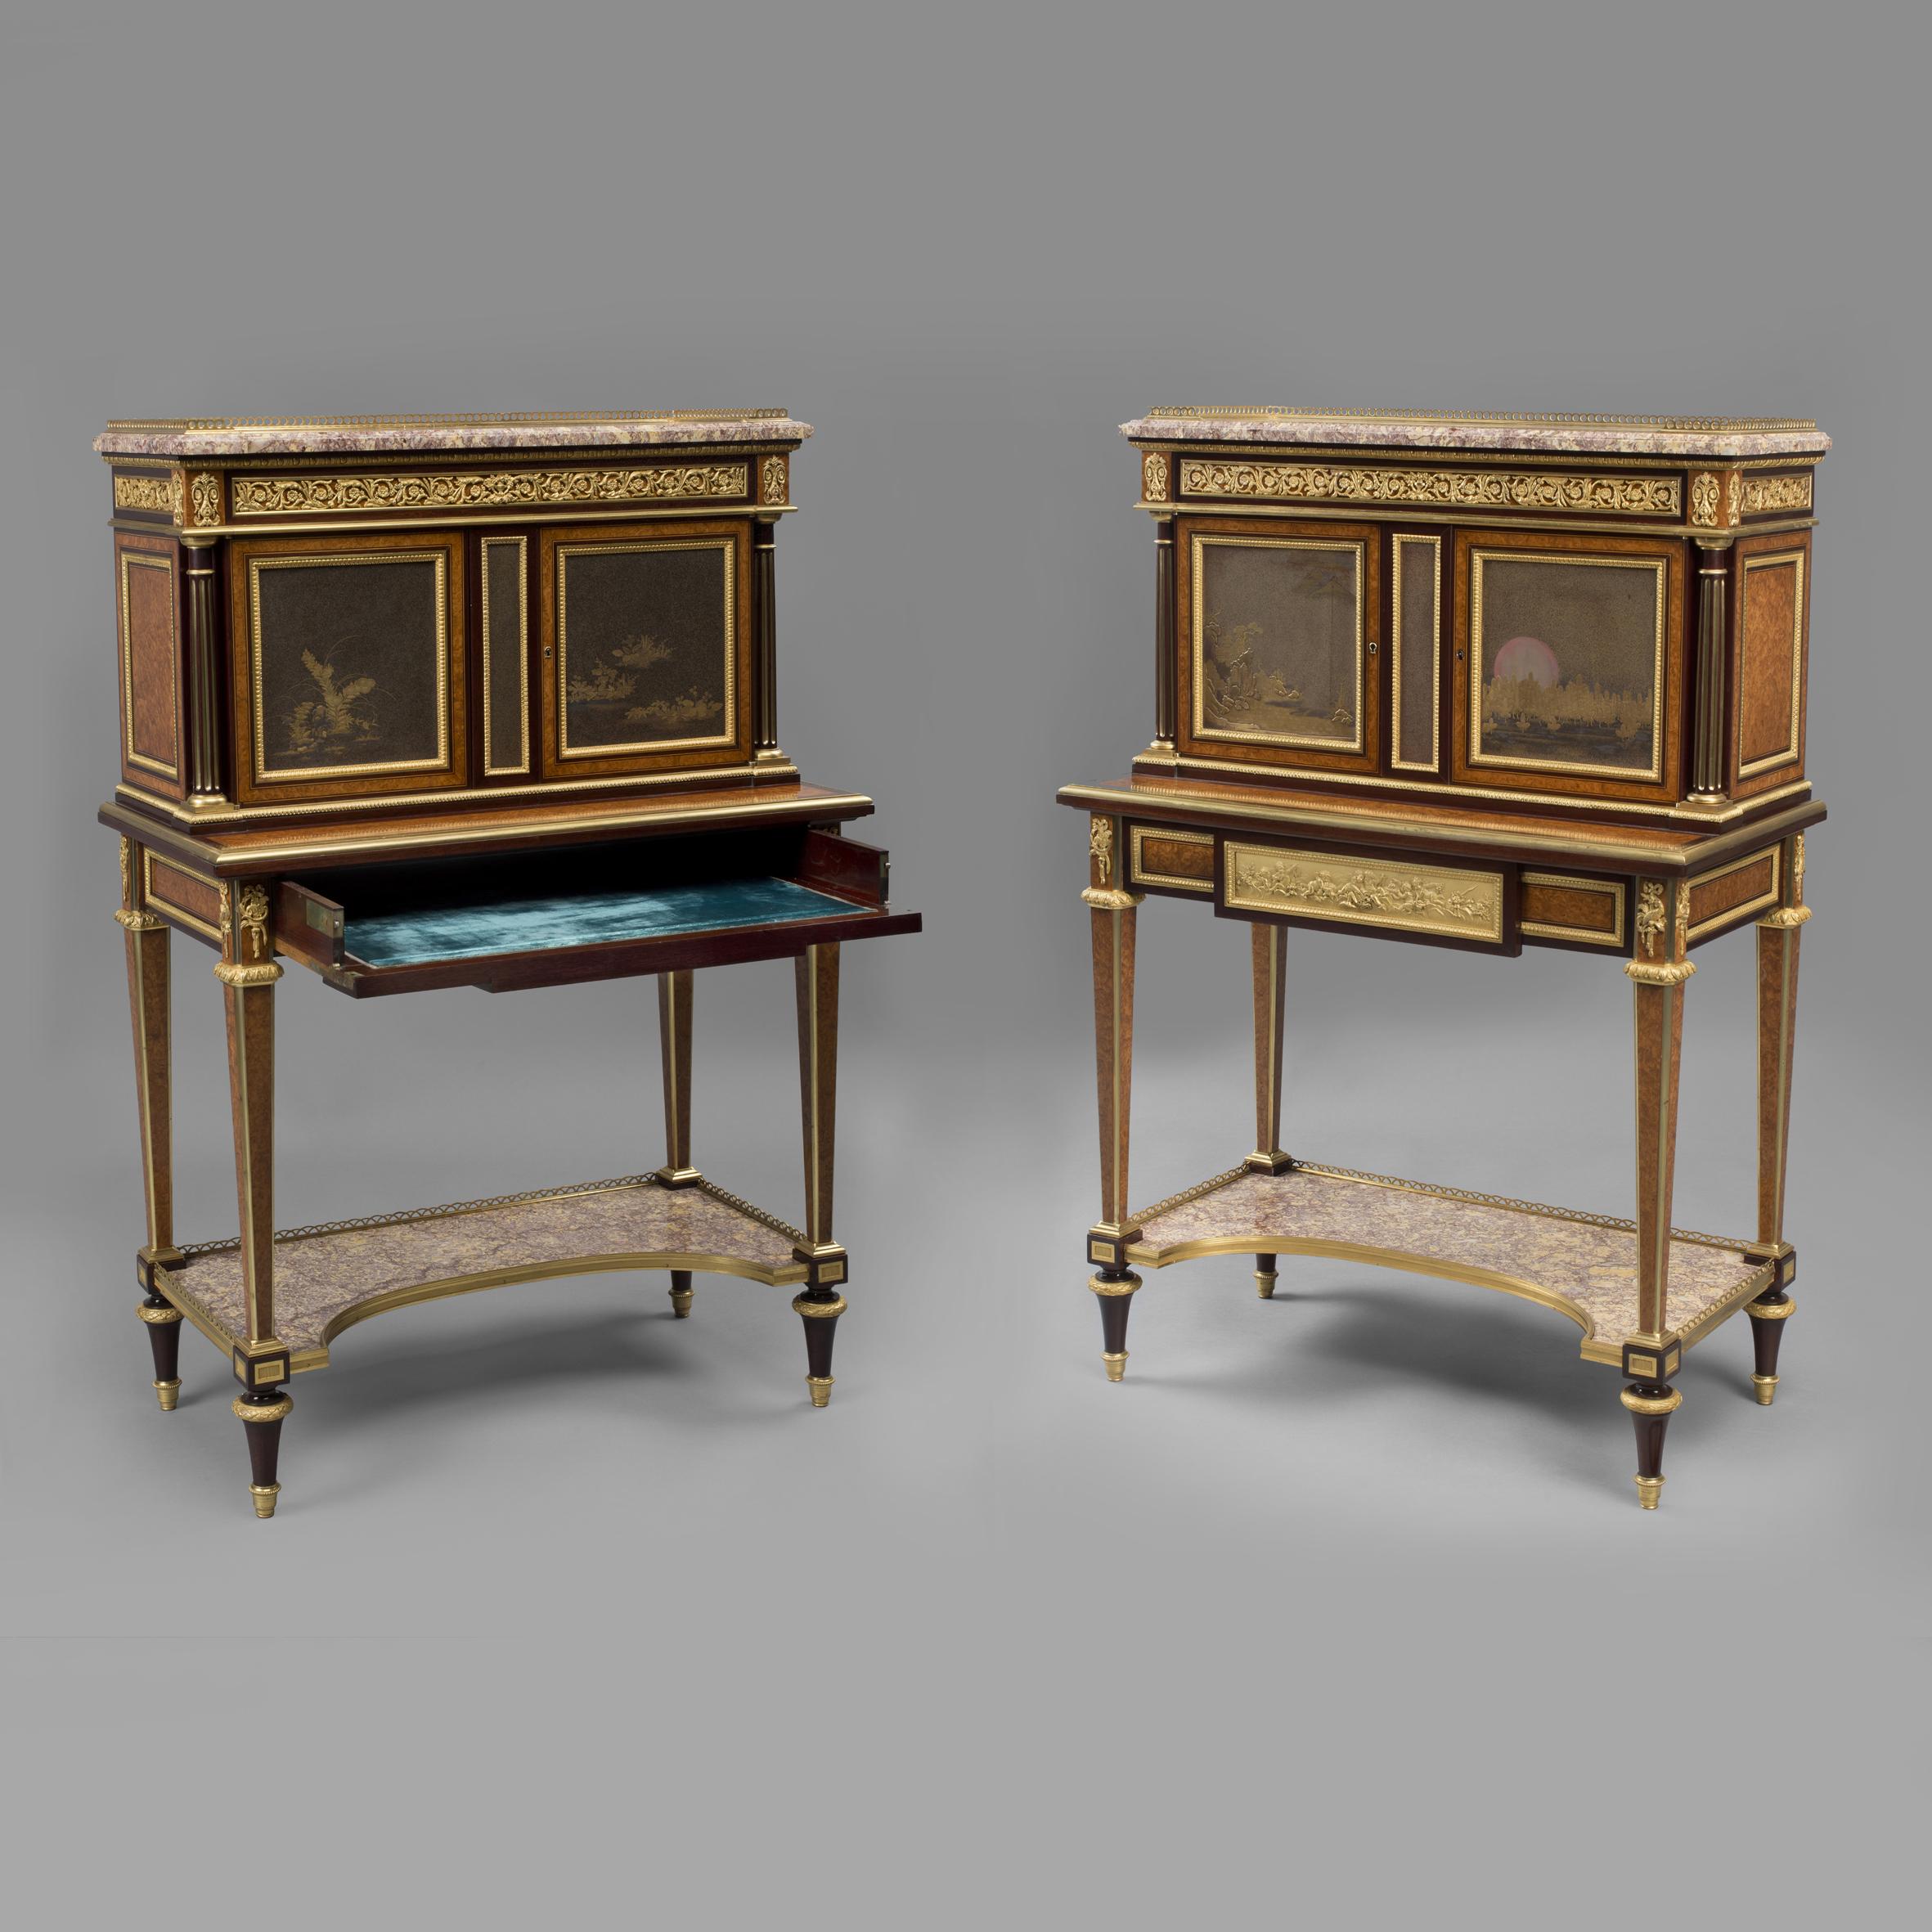 Ein sehr seltenes Paar von  Ausstellung im Stil Louis XVI. Vergoldetes Bronzemodell Bonheur Du Jours mit Lacktafeln, von Henry Dasson. 

Ein Kabinett signiert 